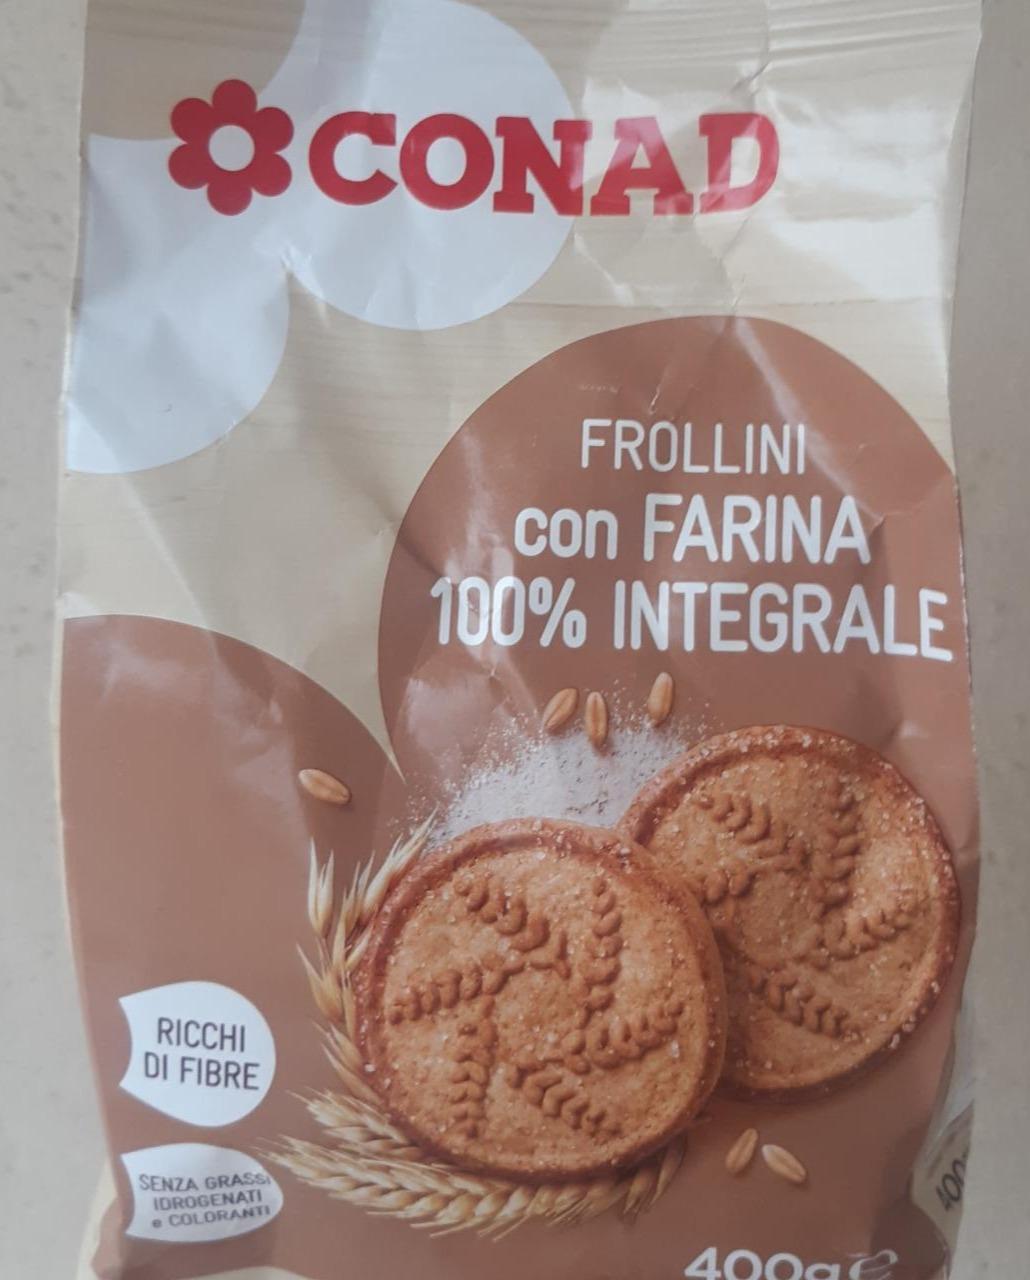 Fotografie - Frollini con farina 100% integrale Conad